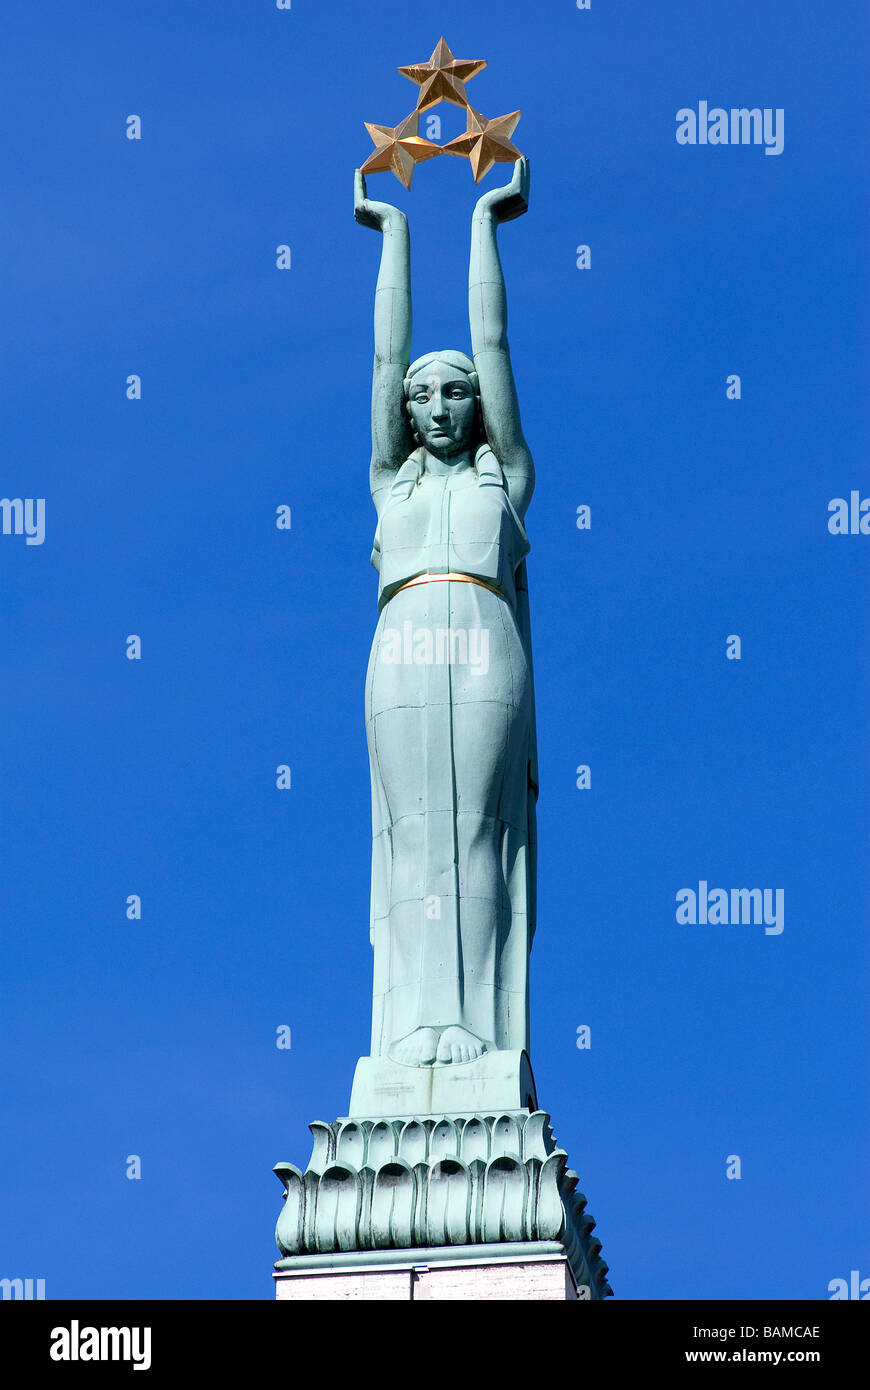 Lettland (Baltikum), Riga, das Freiheitsdenkmal aus dem Jahr 1935, die drei Sterne in den Händen des jungen Mädchens symbolisieren die Stockfoto